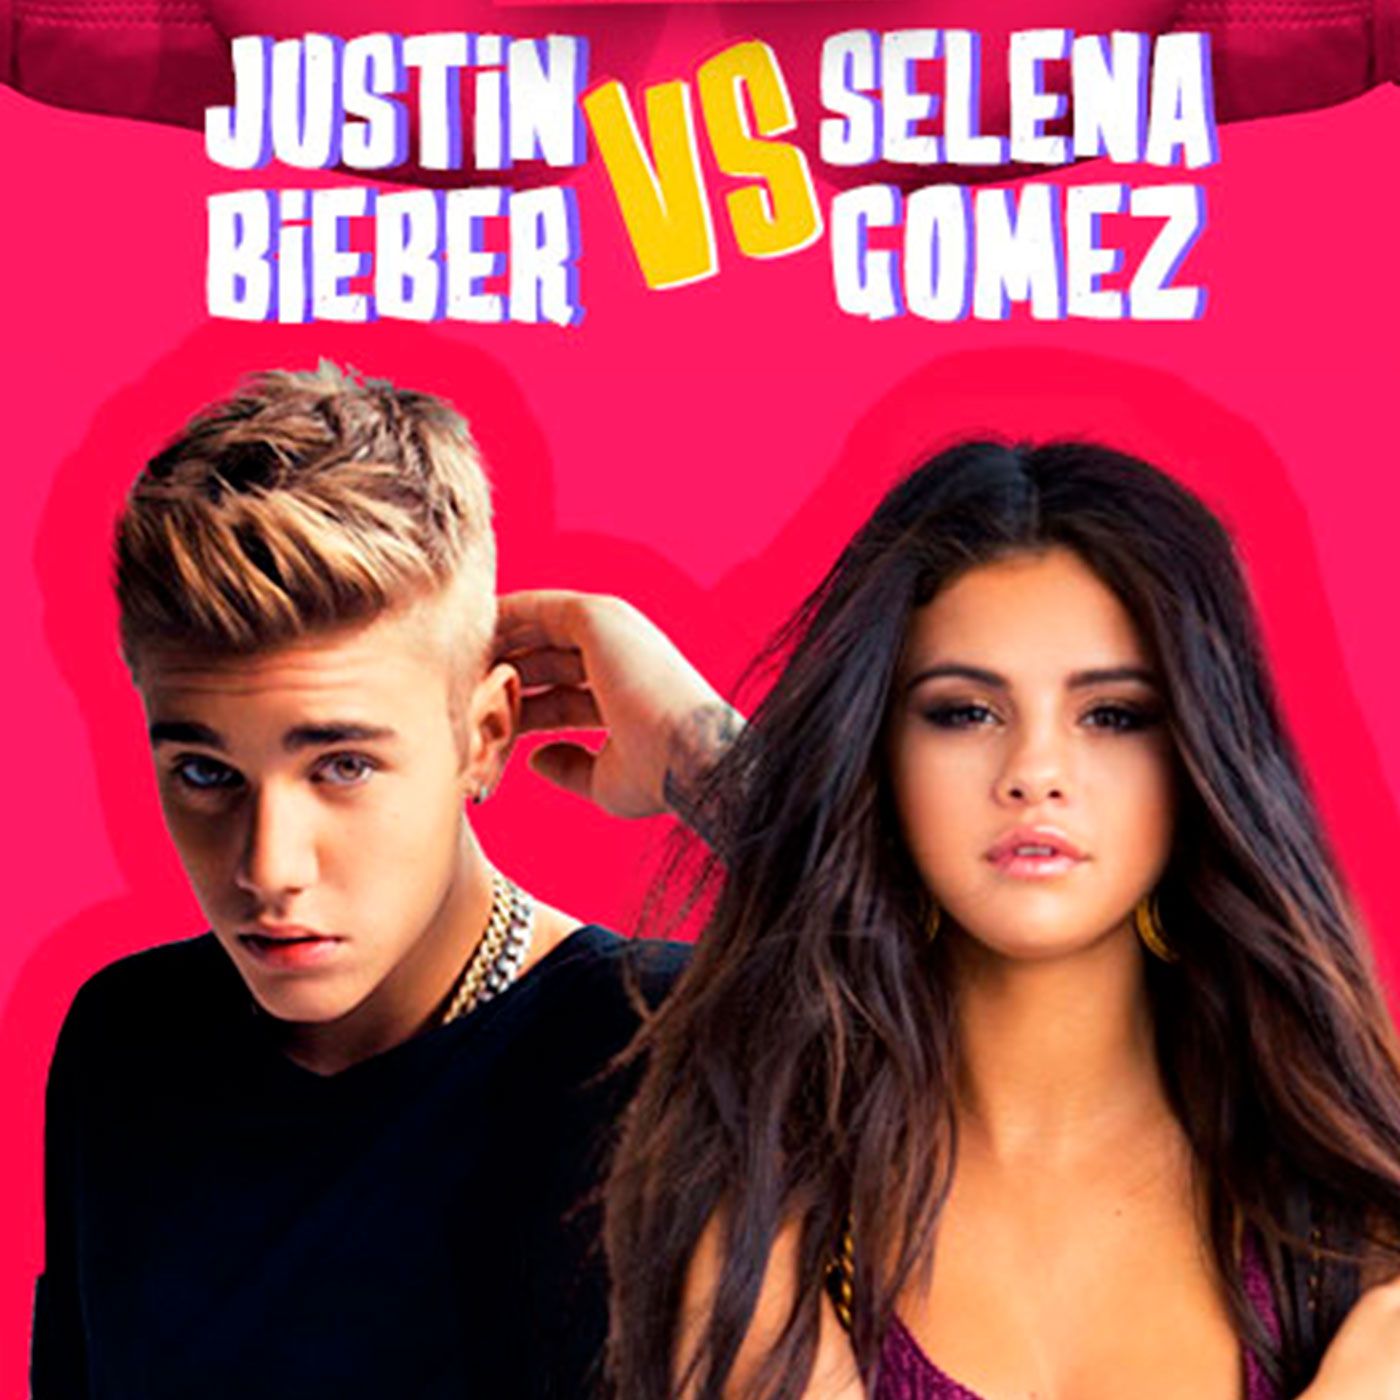 Justin Bieber Vs Selena Gomez: The Book of Jelena